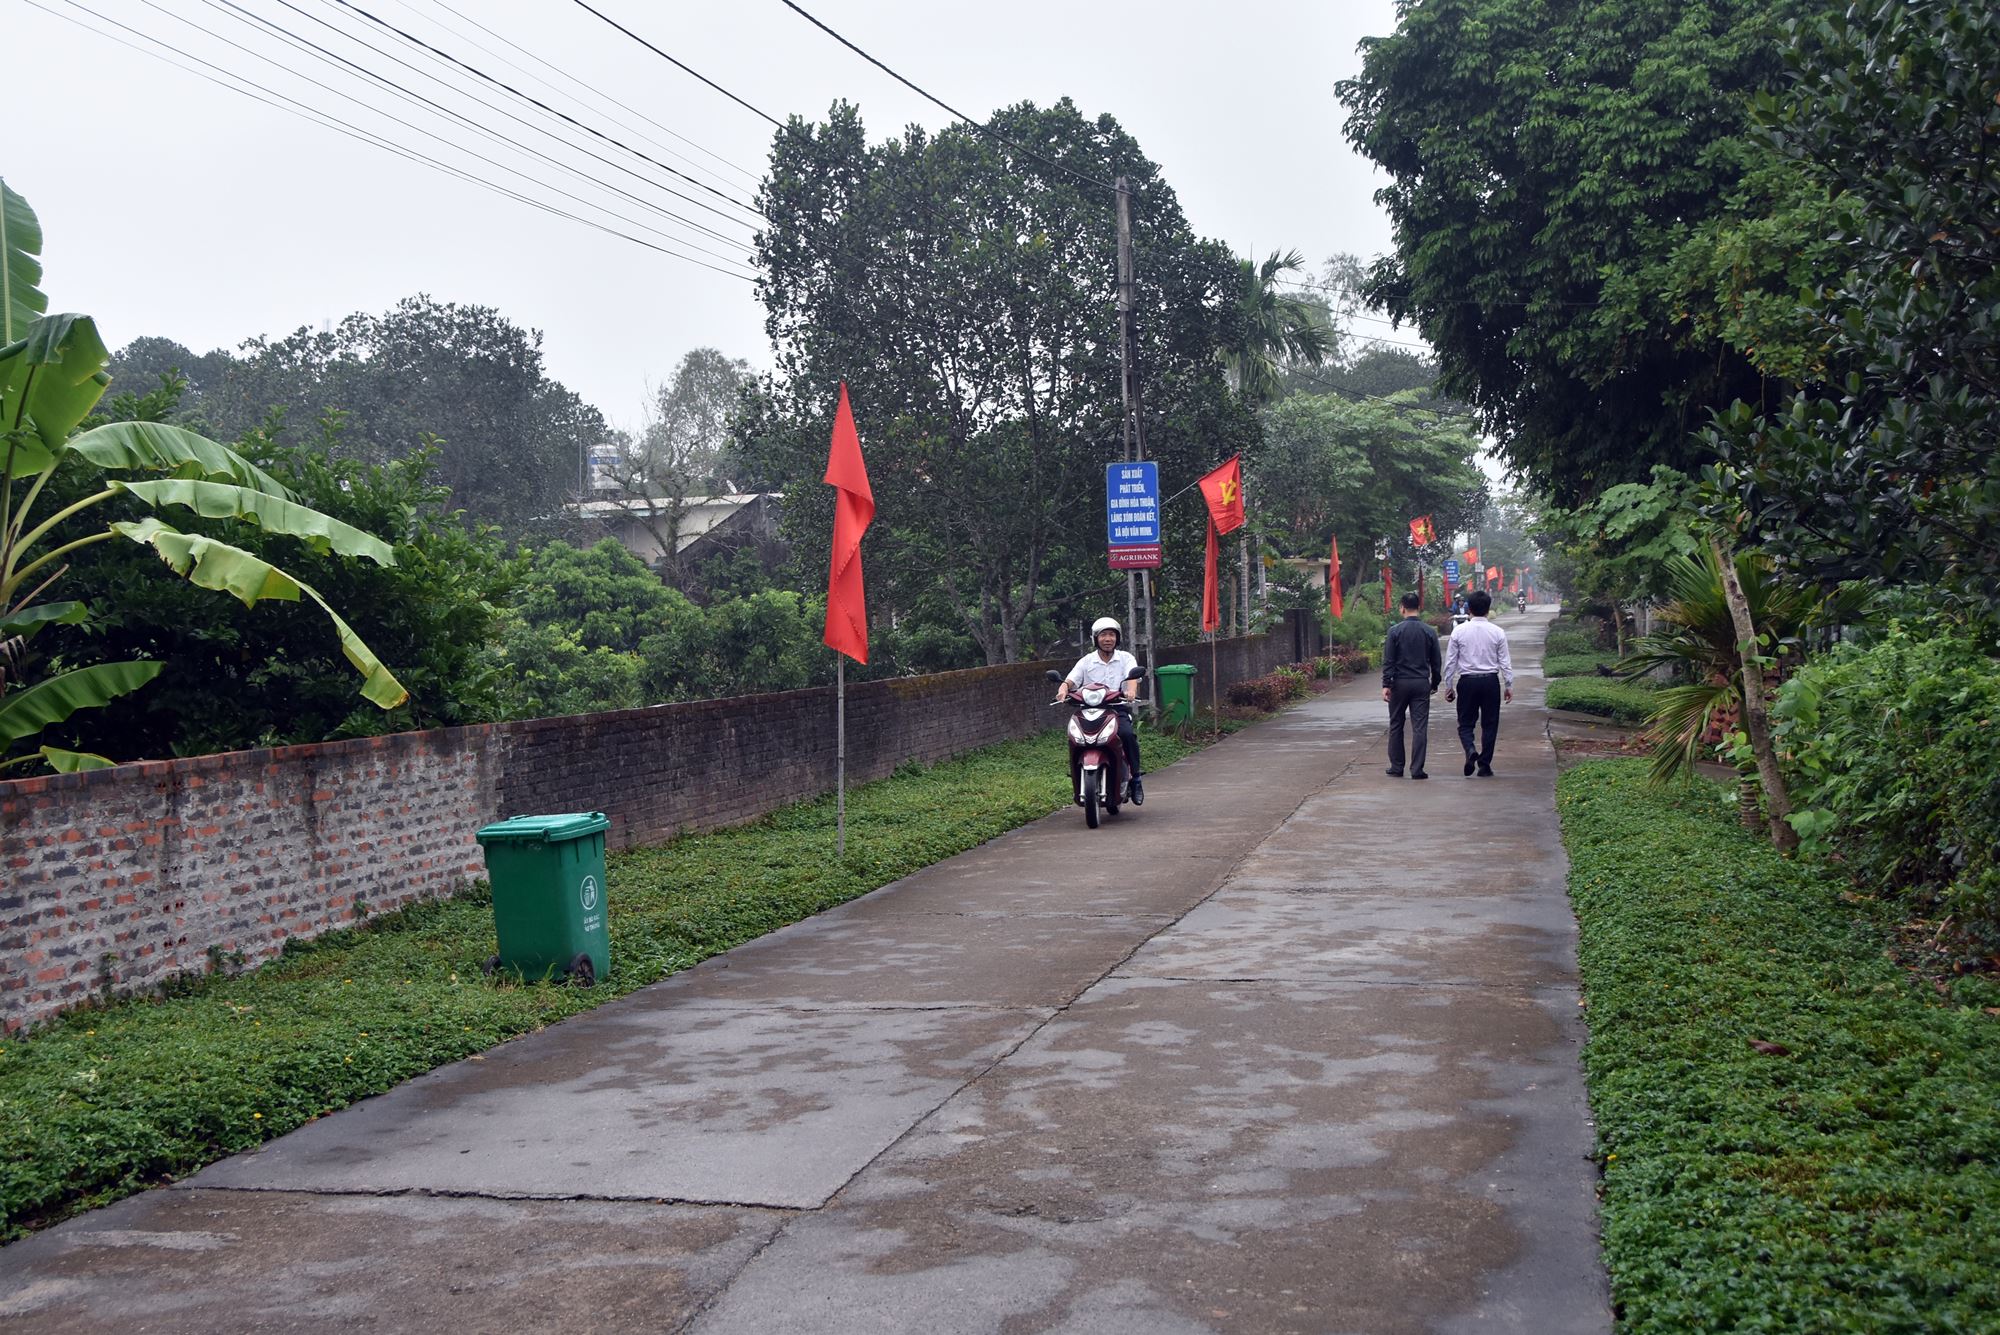 Tuyến đường thôn Hải Sơn, xã Quảng Thành sáng xanh sạch đẹp, phục vụ đi lại an toàn của nhân dân